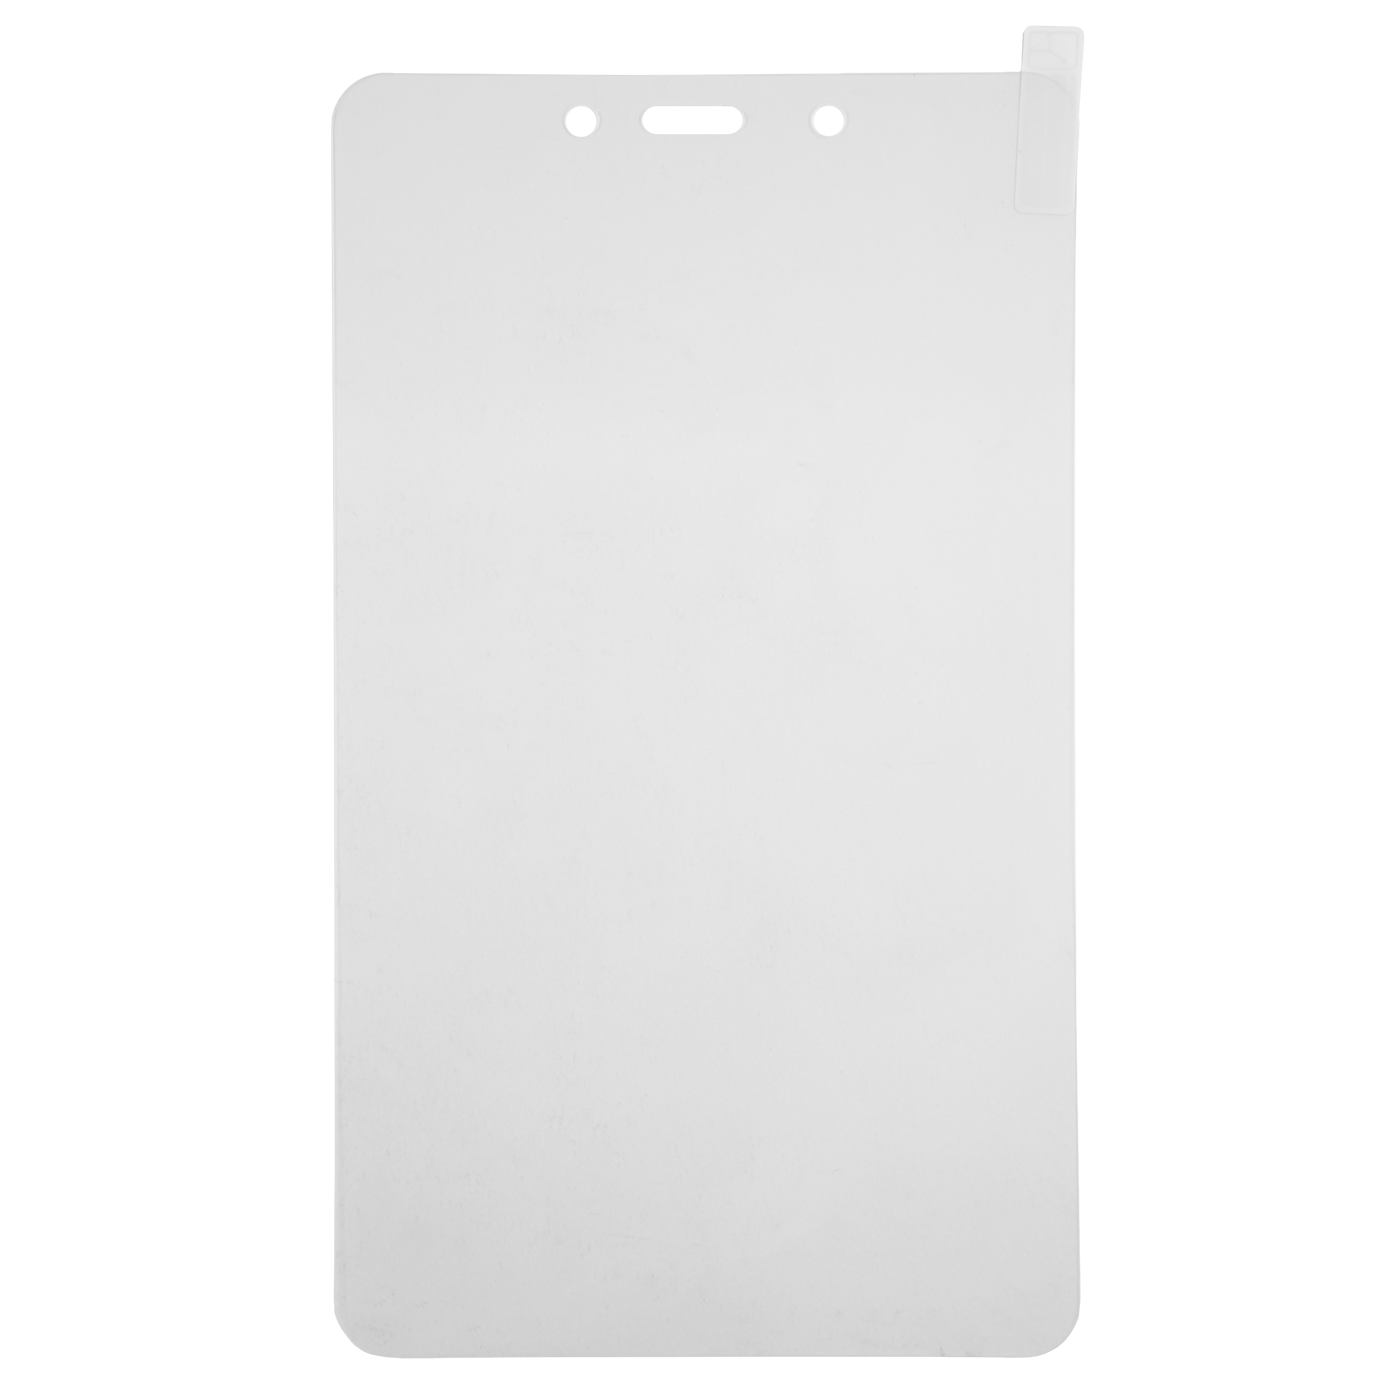 Защитный экран Samsung Tab A 8.0 (2019) T290/T295 tempered glass